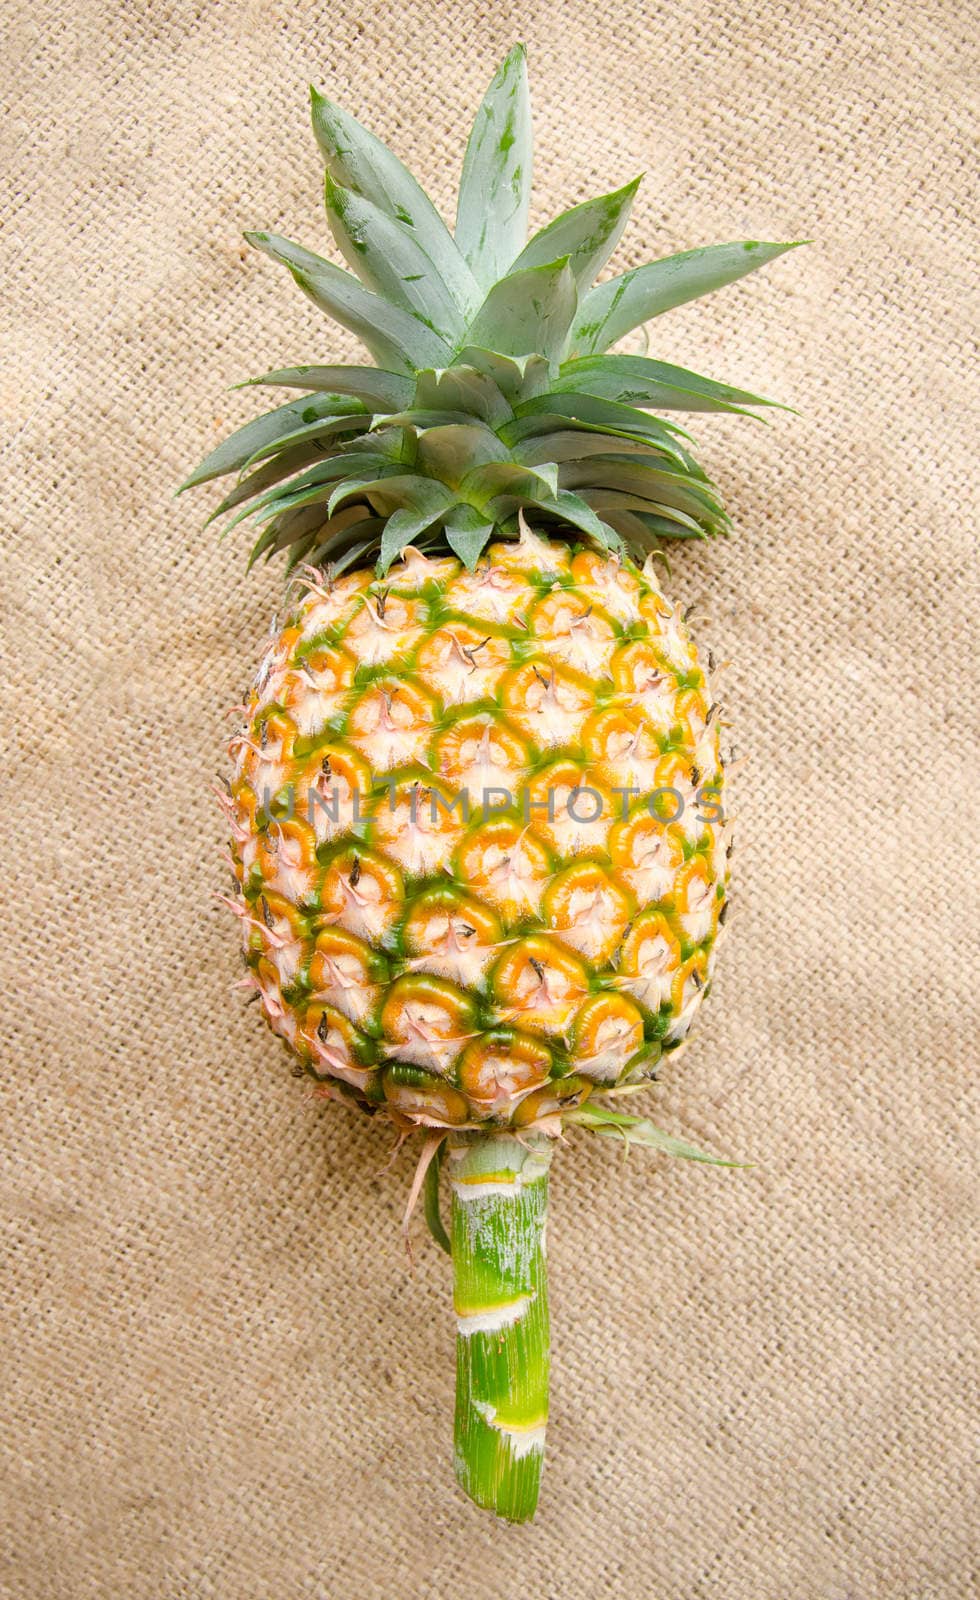 Pineapple on sack